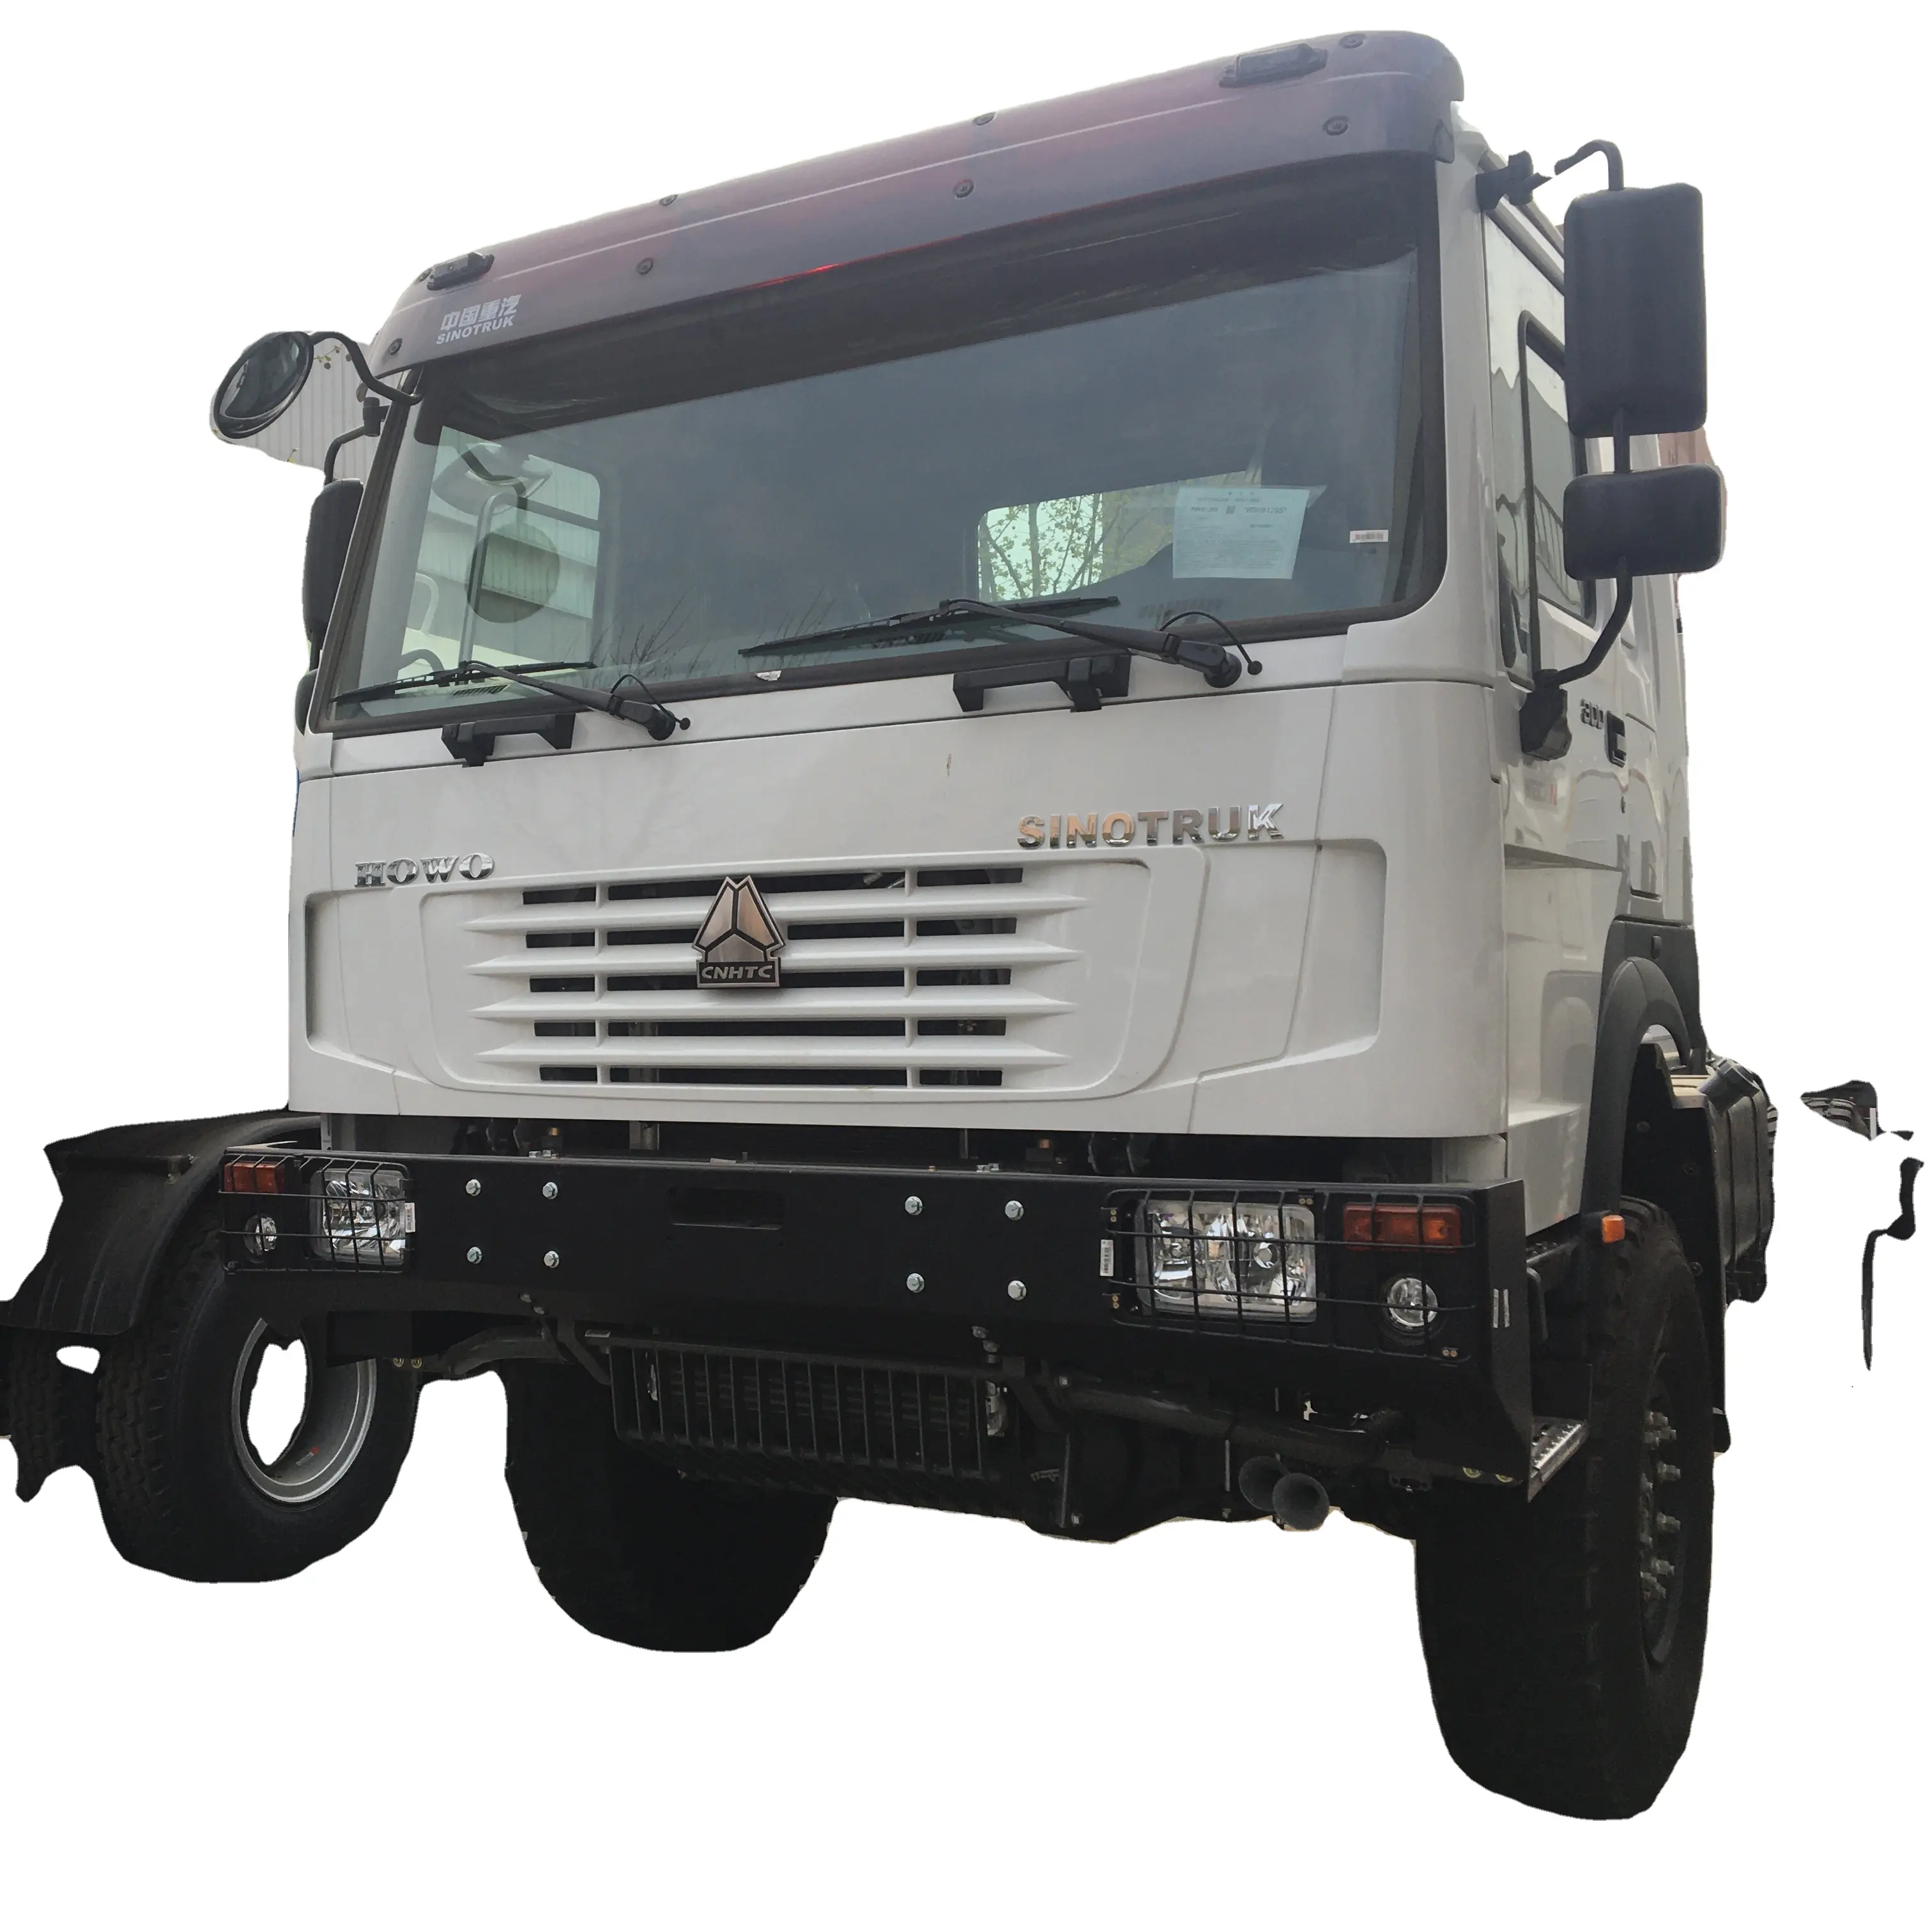 Offre Spéciale 300hp 20 tonnes SINOTRUK HOWO 4x4 toutes les roues motrices howo 4x4 camion cargo